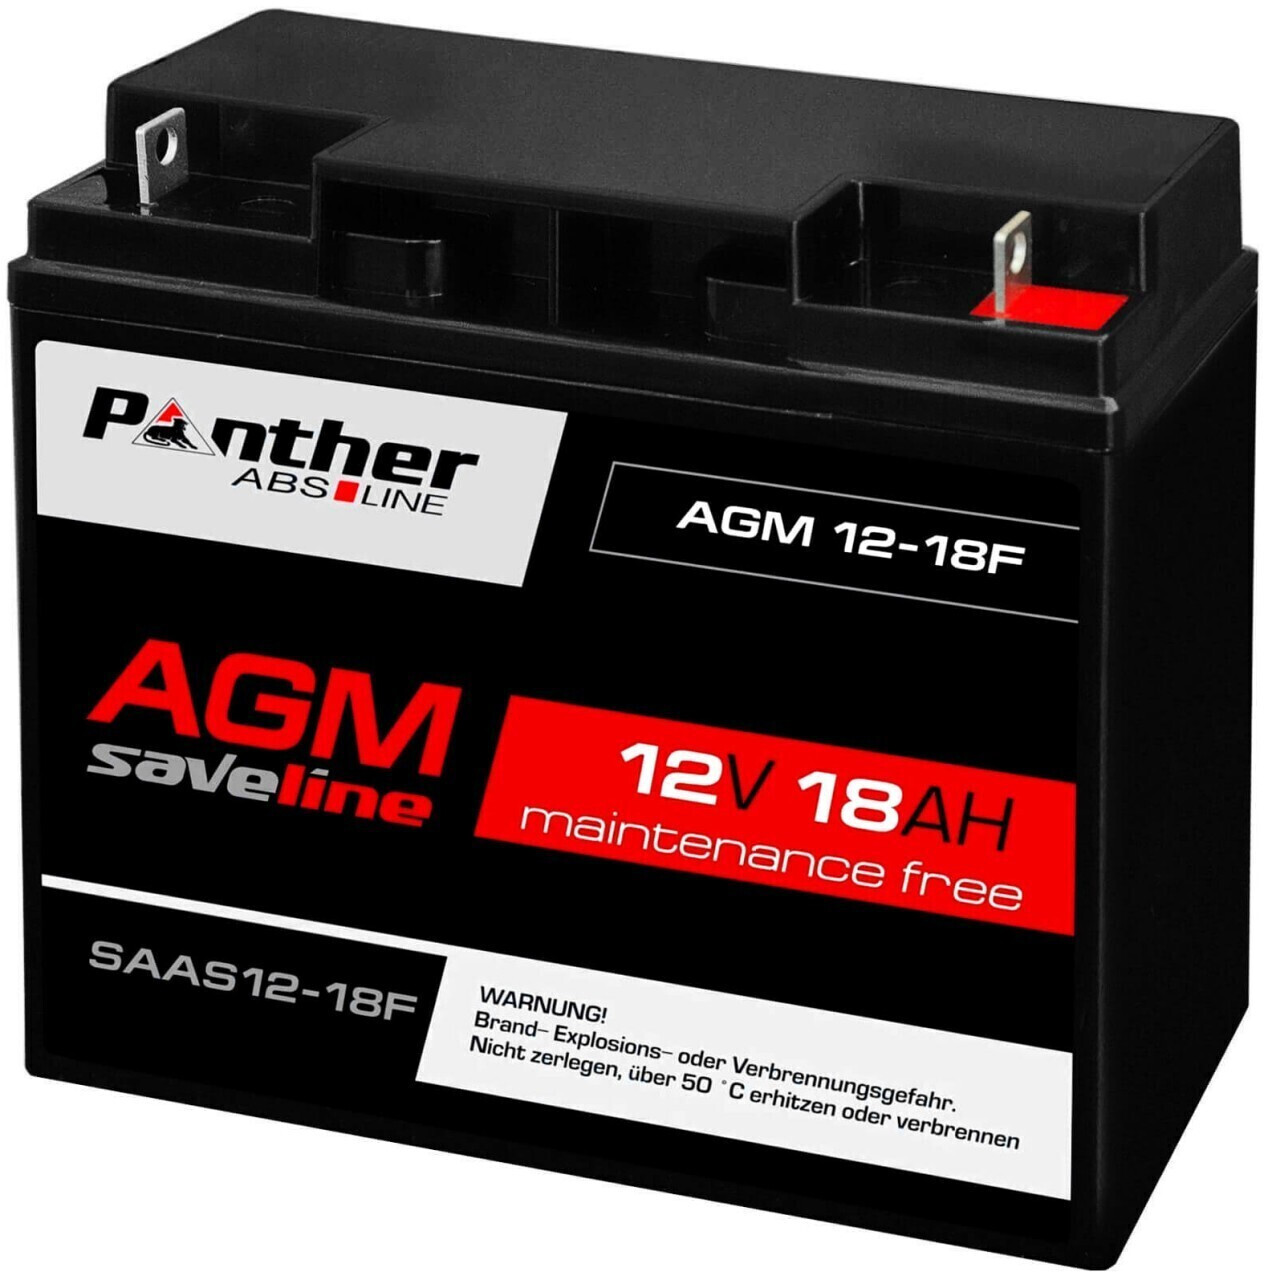 Panther AGM 12V 200Ah Versorgungsbatterie